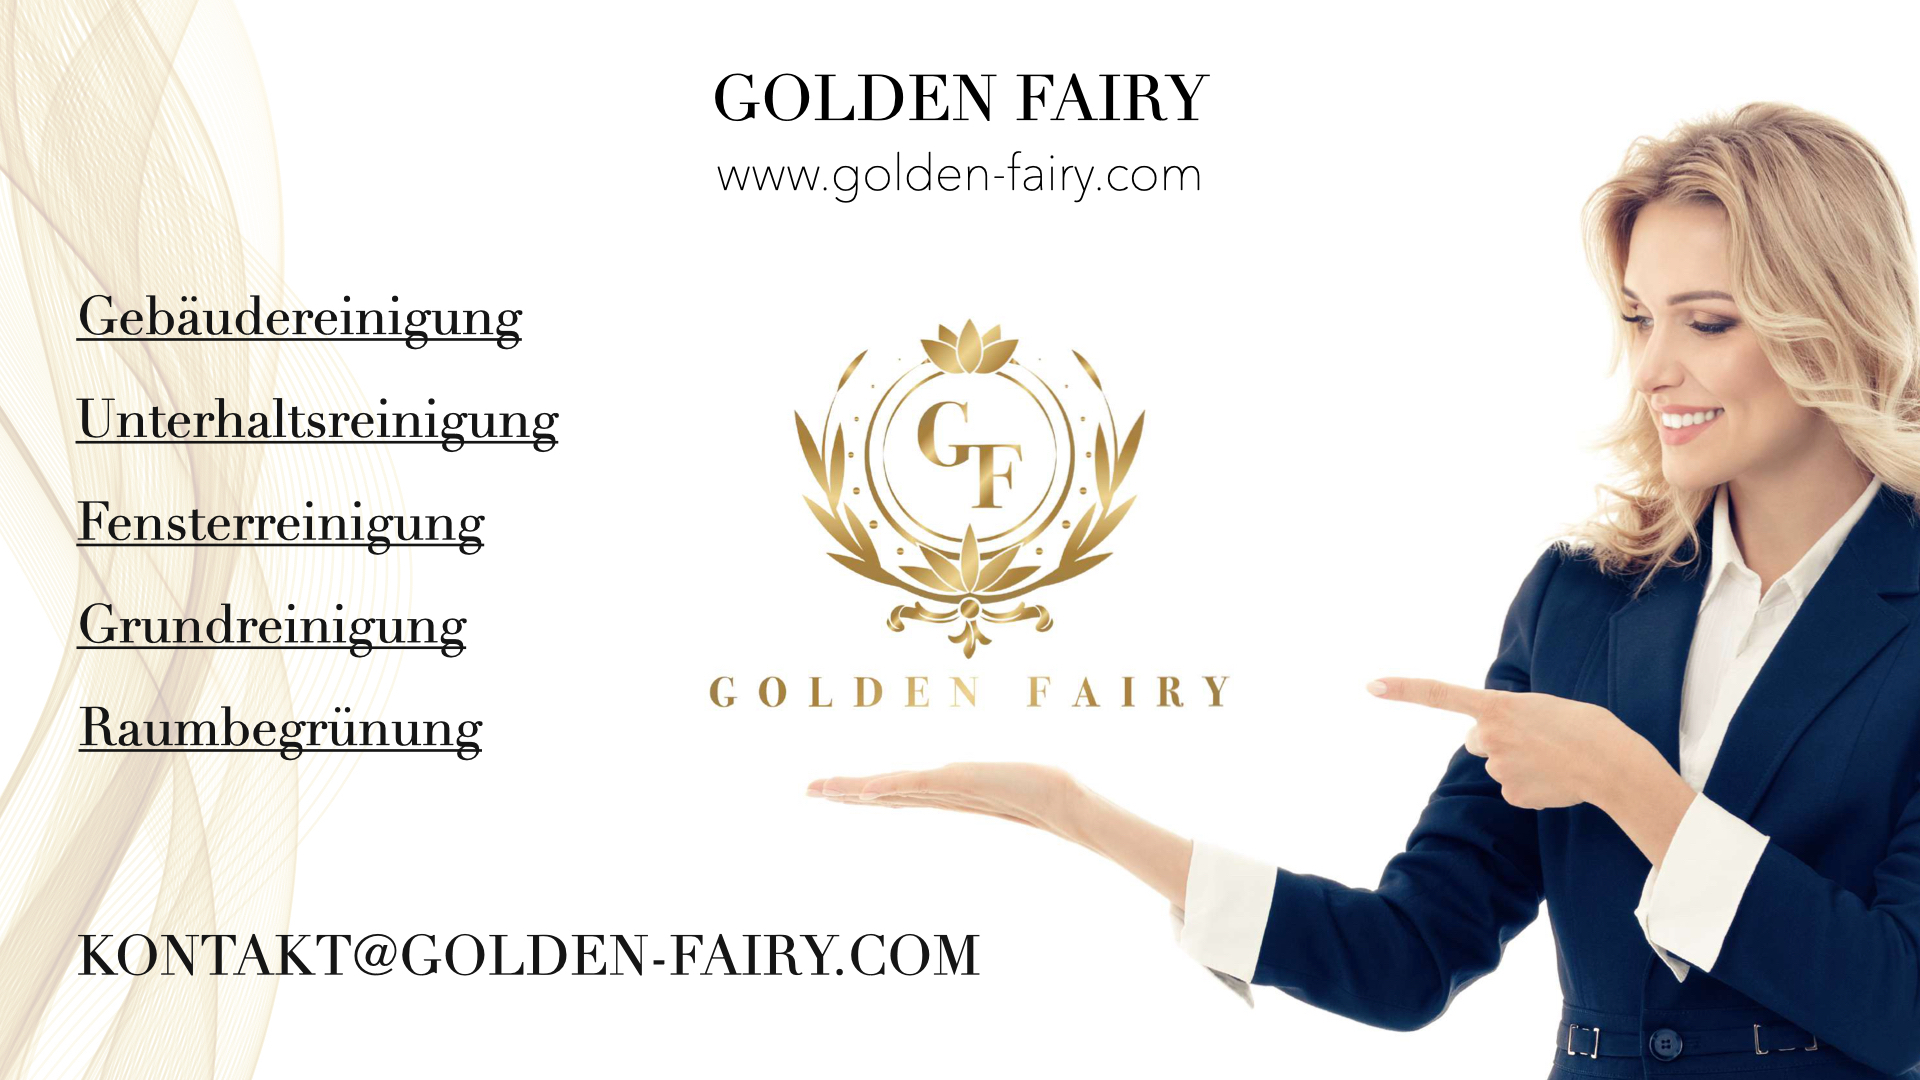 (c) Golden-fairy.com